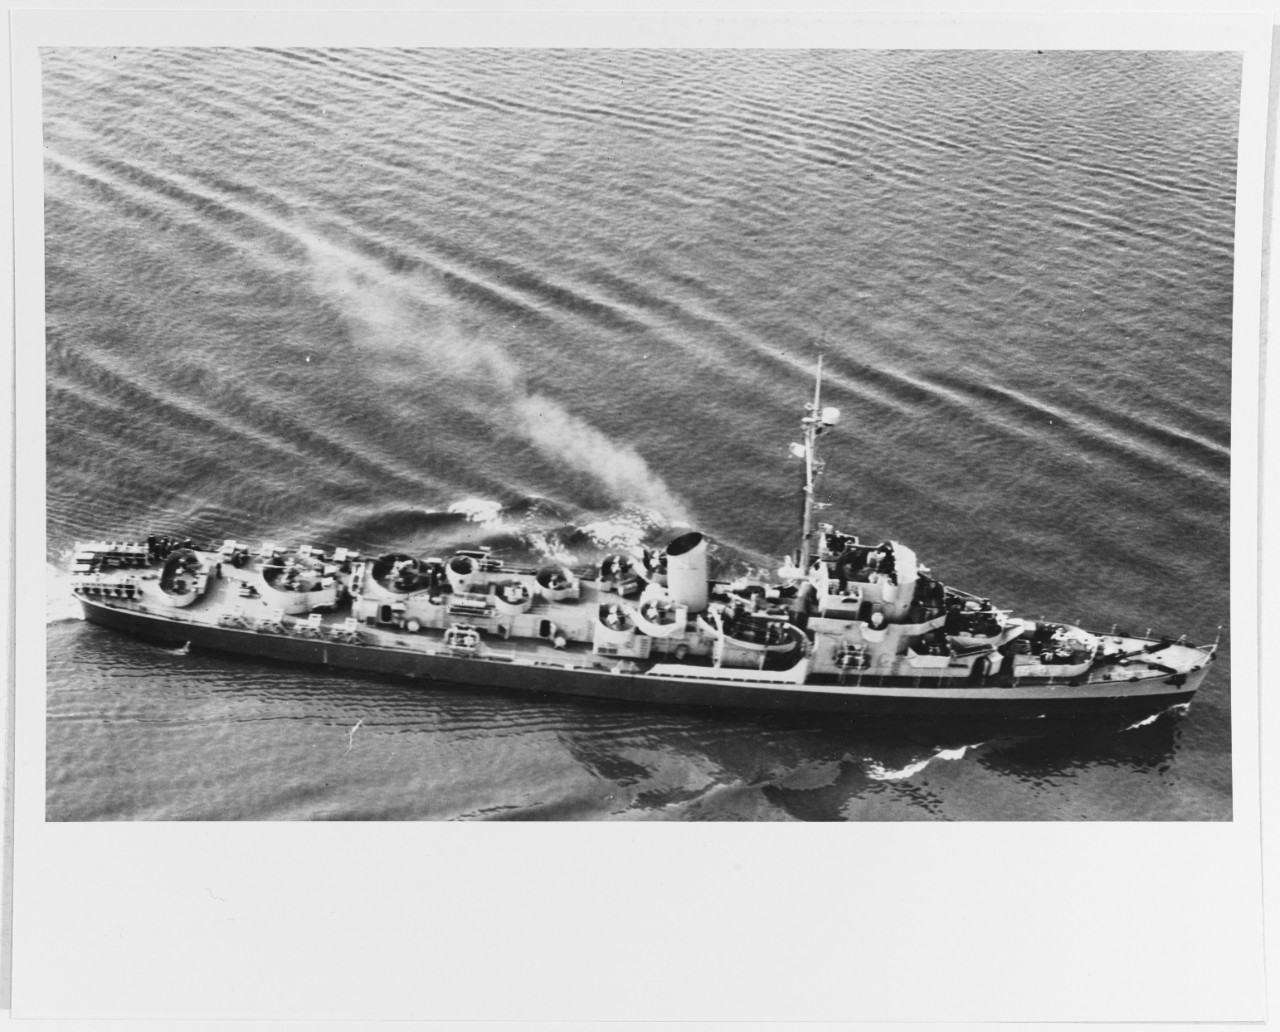 TUNISIEN (French frigate, ex-USS CROSLEY, DE-108)